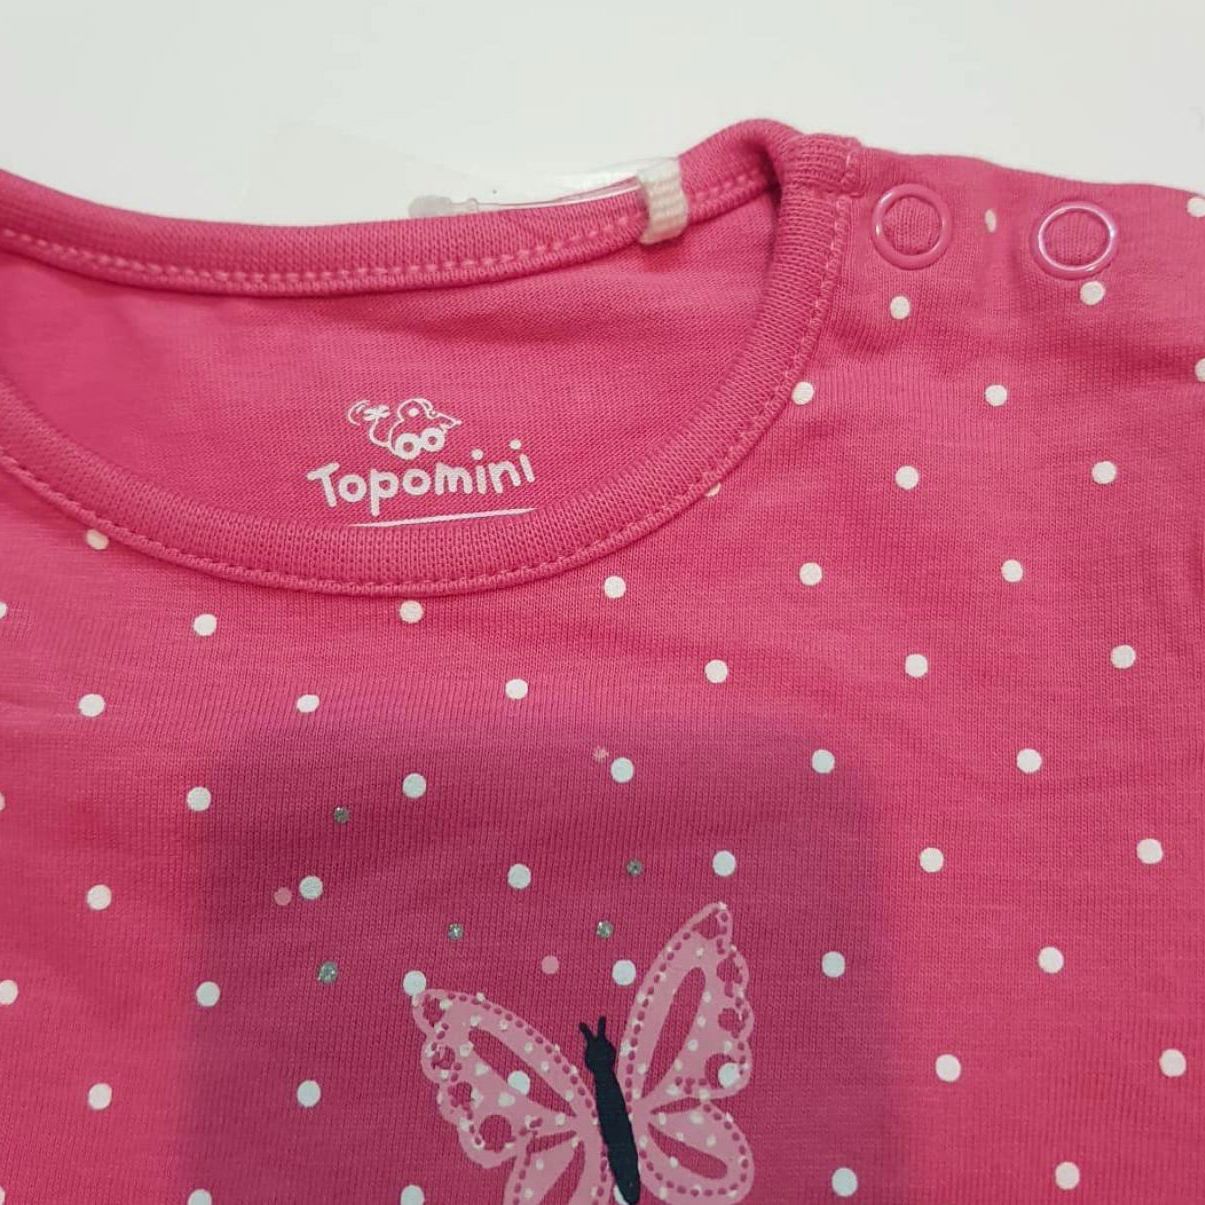 تی شرت آستین بلند نوزادی توپومینی مدل 127223 خالدار پروانه ای -  - 3